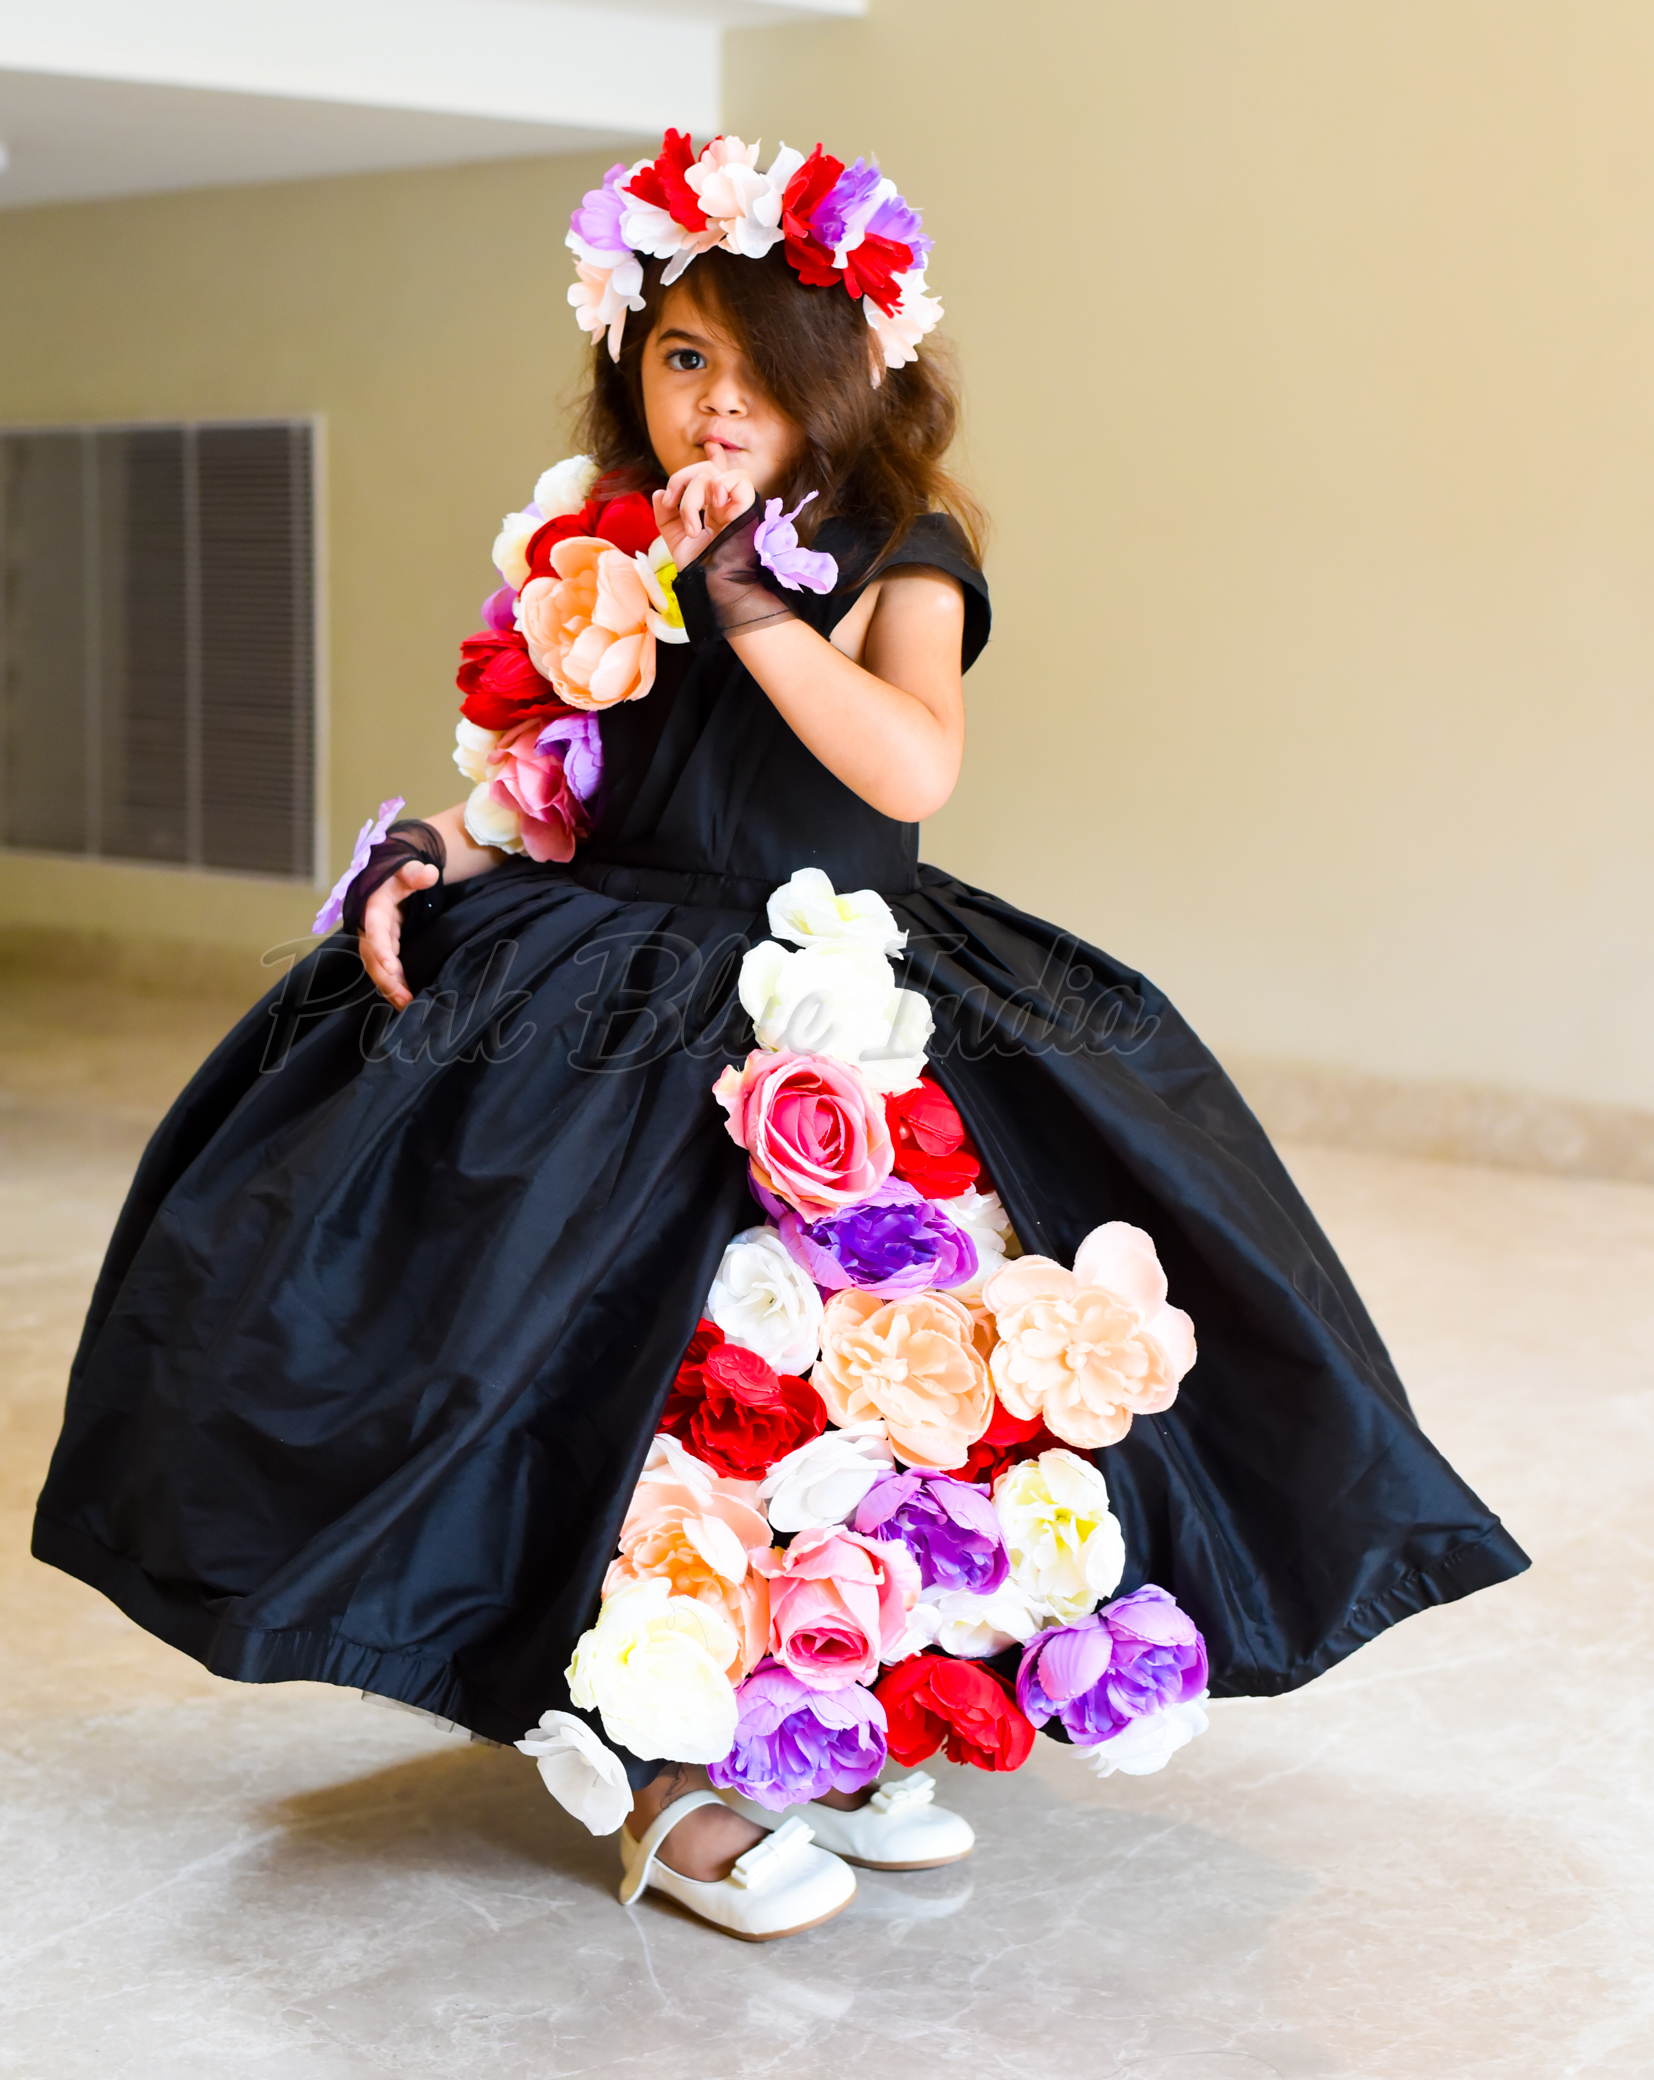 68 Baby girl wedding dresses ideas  kids designer dresses, kids fashion  dress, dresses kids girl